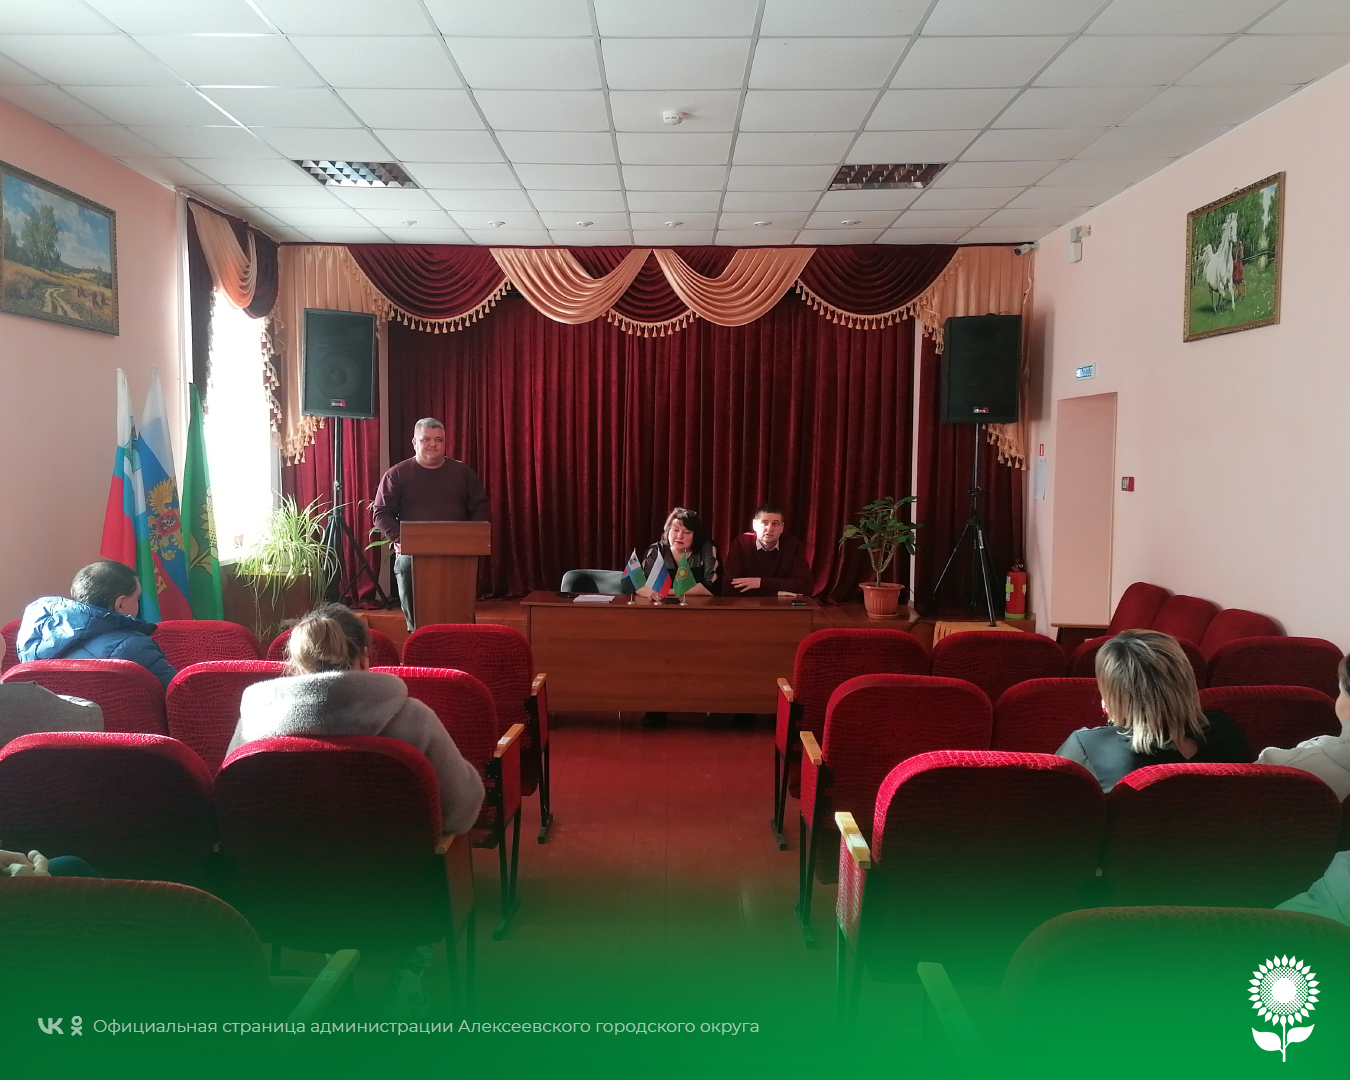 Сегодня состоялась встреча жителей Варваровской сельской территории с Алексеем Александровичем Панченко, лидером общественного мнения, депутатом Совета депутатов Алексеевского городского округа.